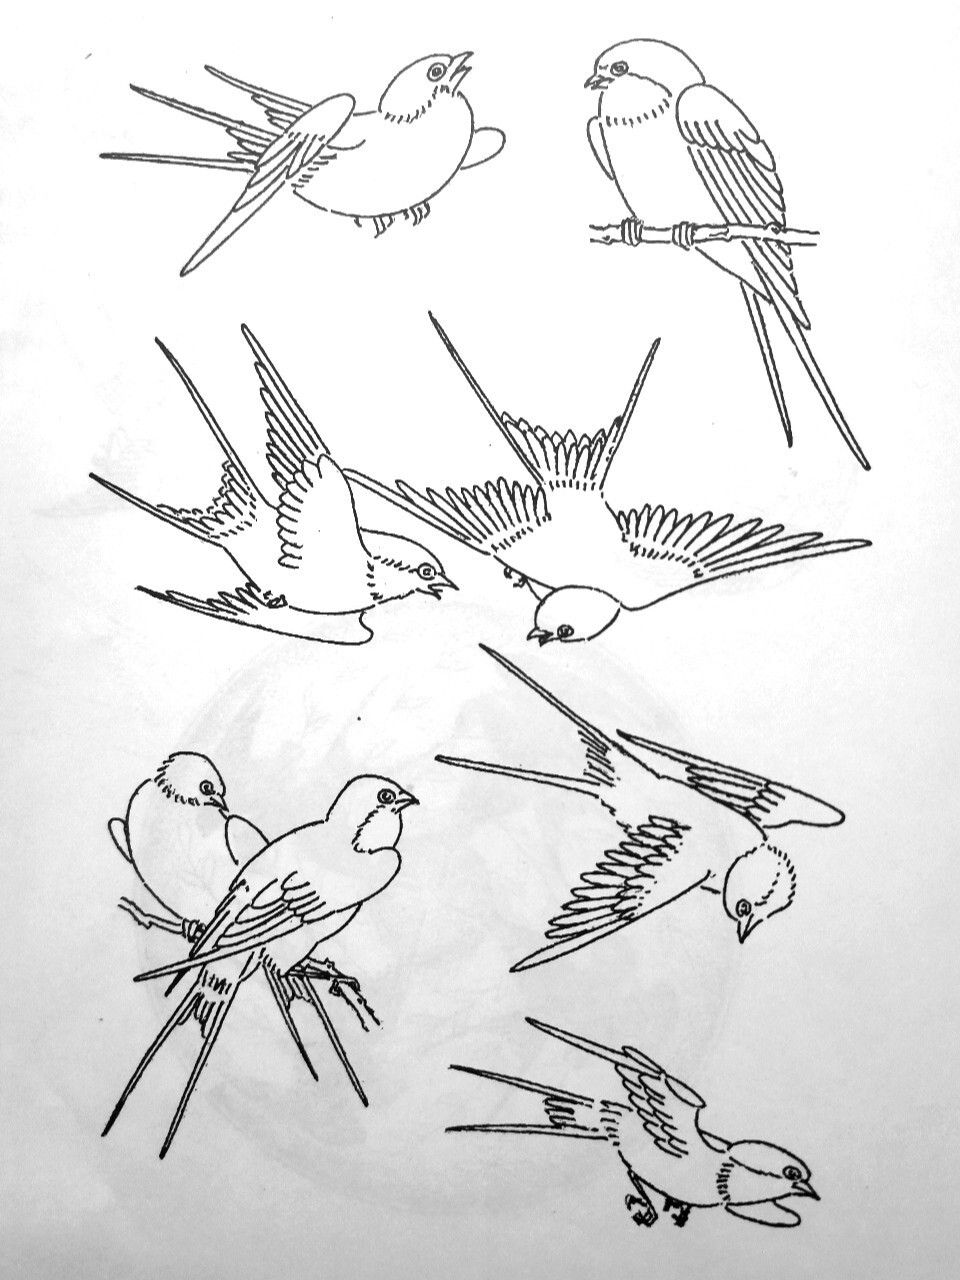 画痴🍀传统图案动物篇(燕) 燕子,是人们常见和喜爱的候鸟古人对燕